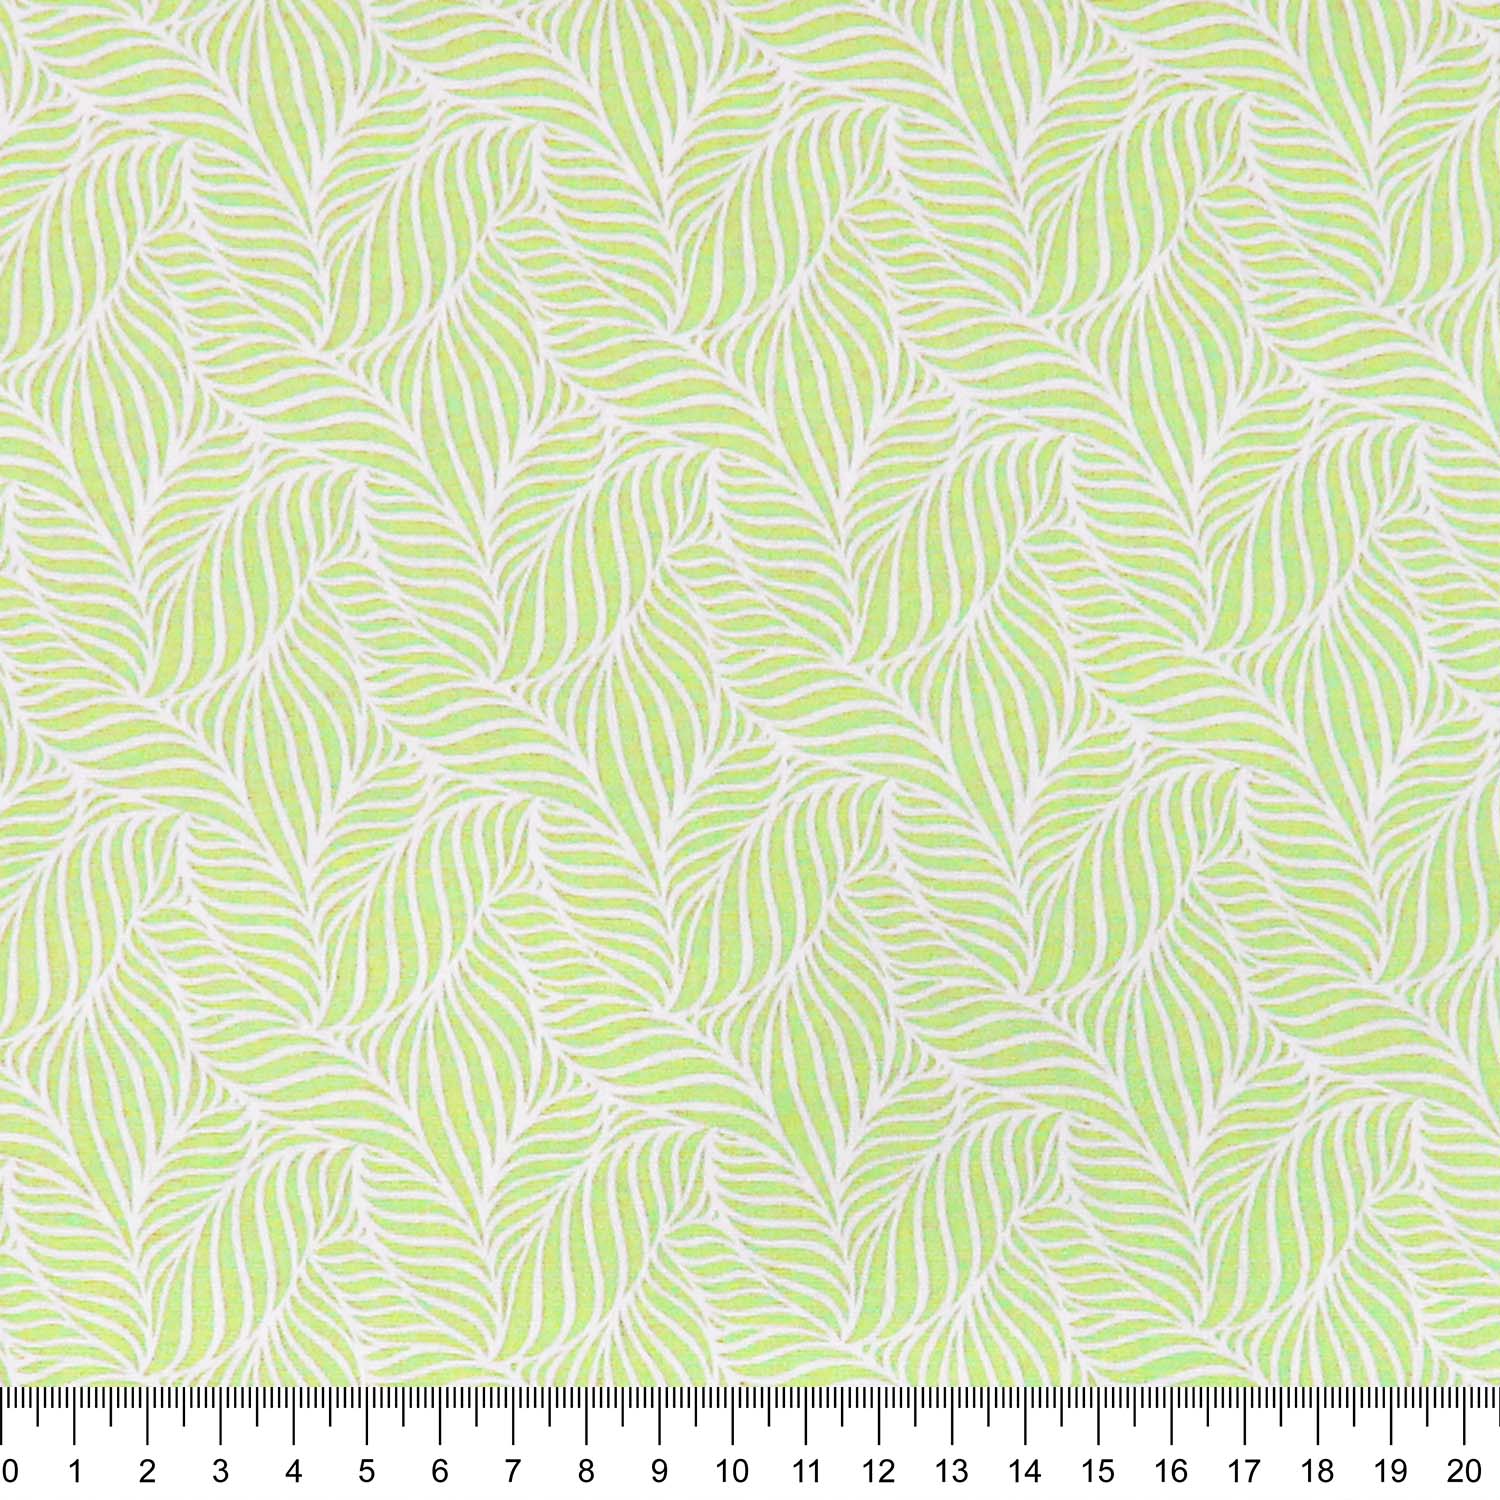 tecido-tricoline-textura-folha-verde-limao-della-aviamentos-10946_1